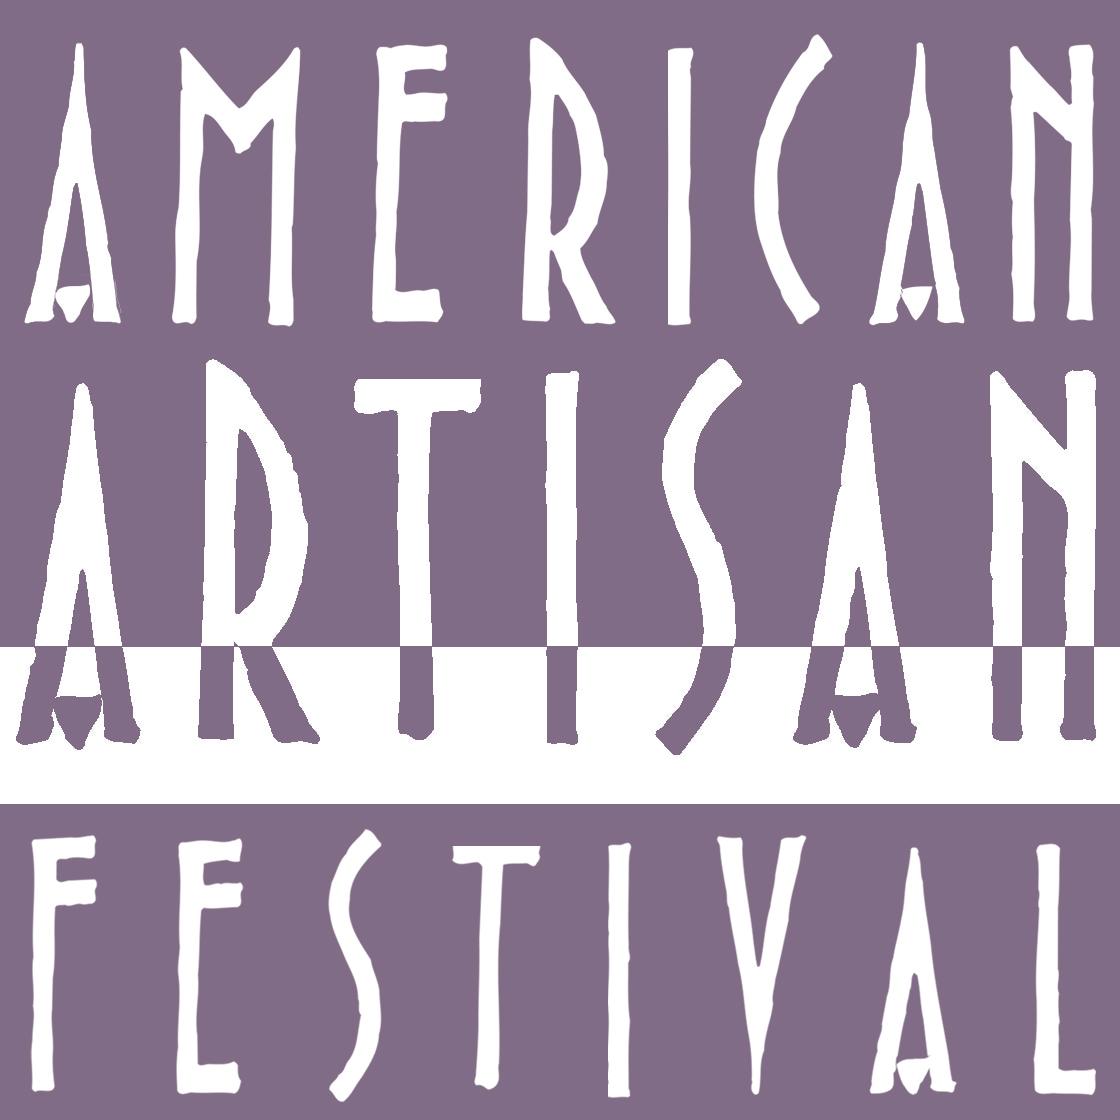 2019 Nashville American Artisan Festival